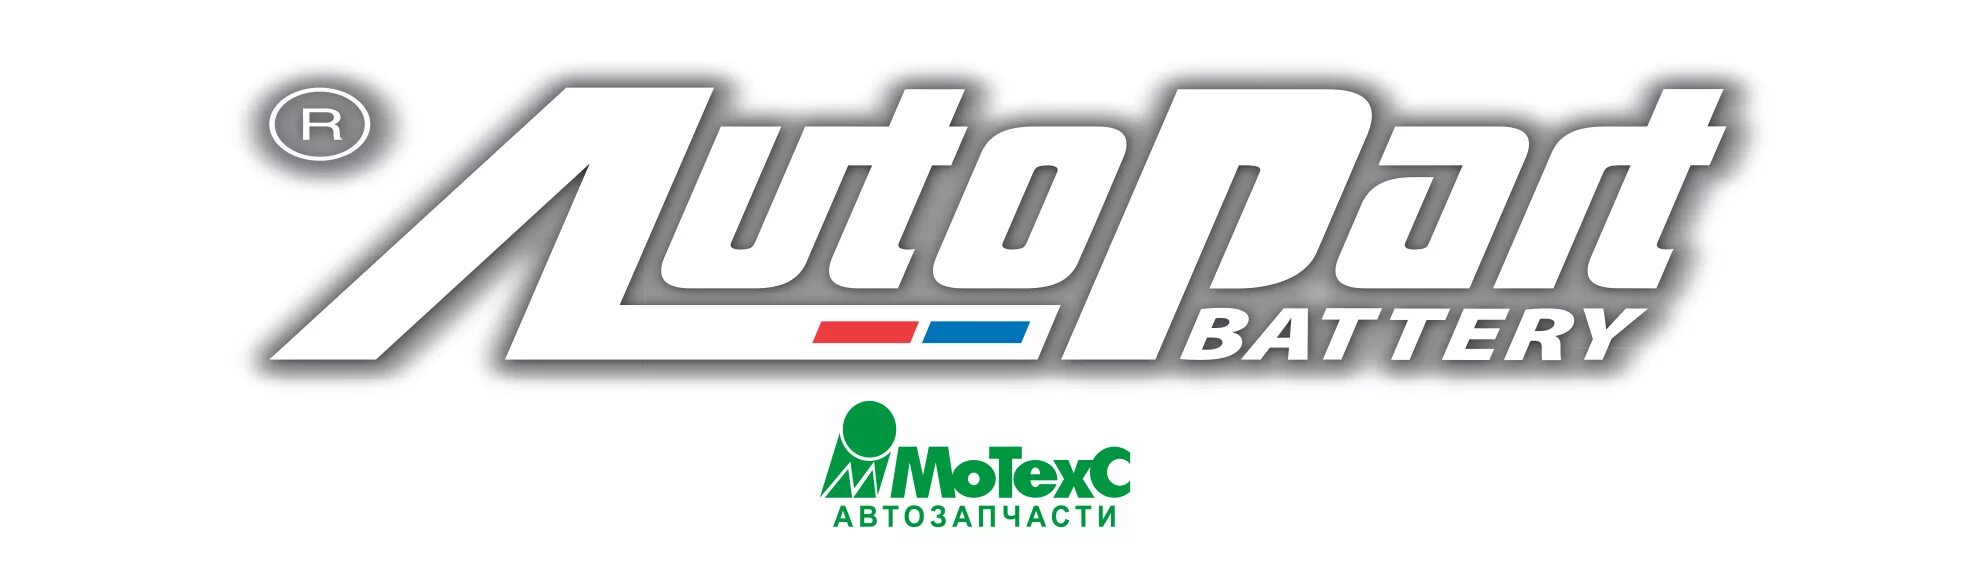 МОТЕХС. Motexc ru